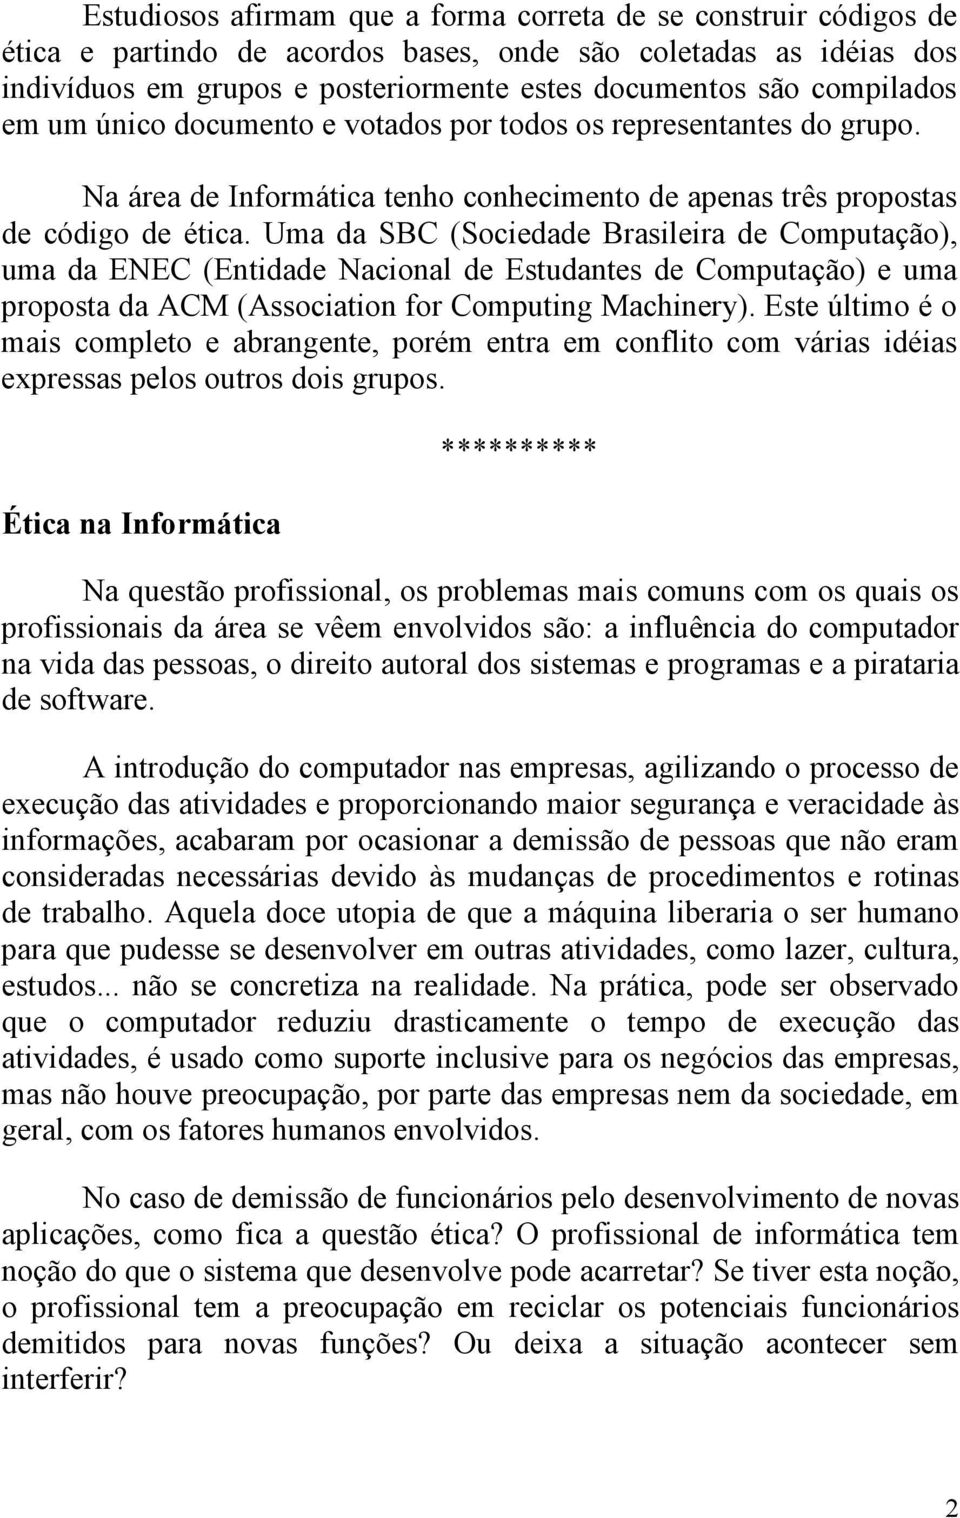 Uma da SBC (Sociedade Brasileira de Computação), uma da ENEC (Entidade Nacional de Estudantes de Computação) e uma proposta da ACM (Association for Computing Machinery).